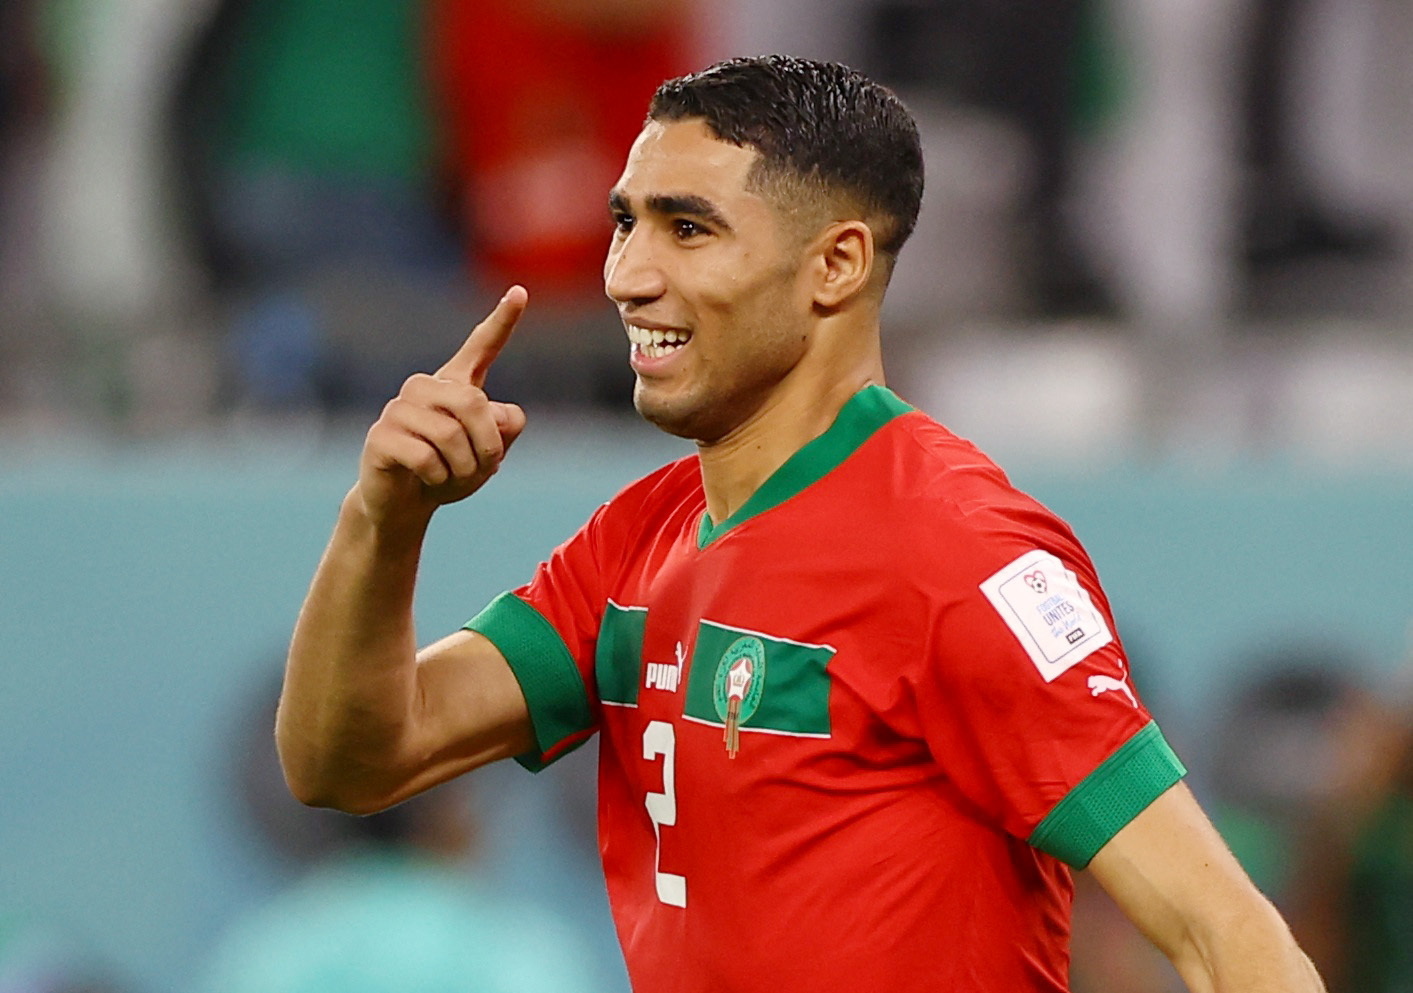 Sự nghiệp của cầu thủ người Morocco có thể bị ảnh hưởng rất nhiều sau scandal hiếp dâm